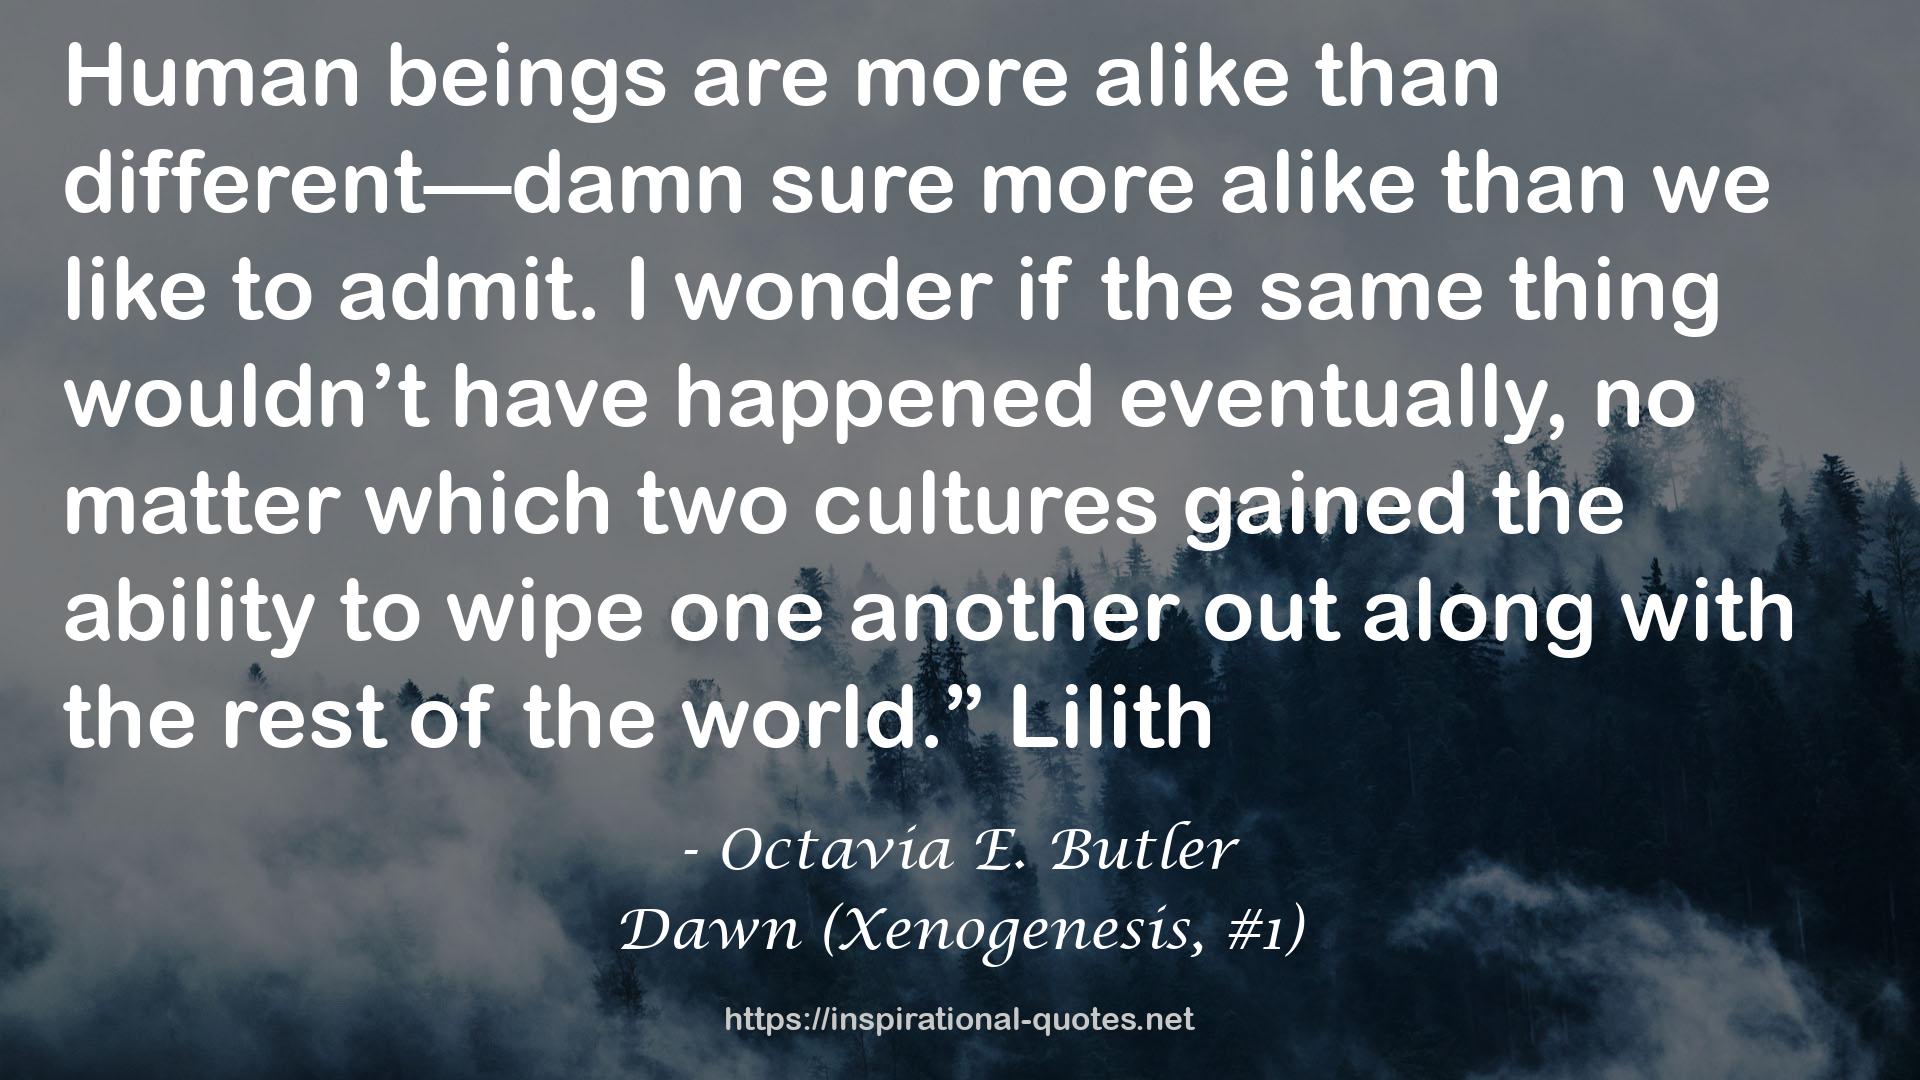 Octavia E. Butler QUOTES